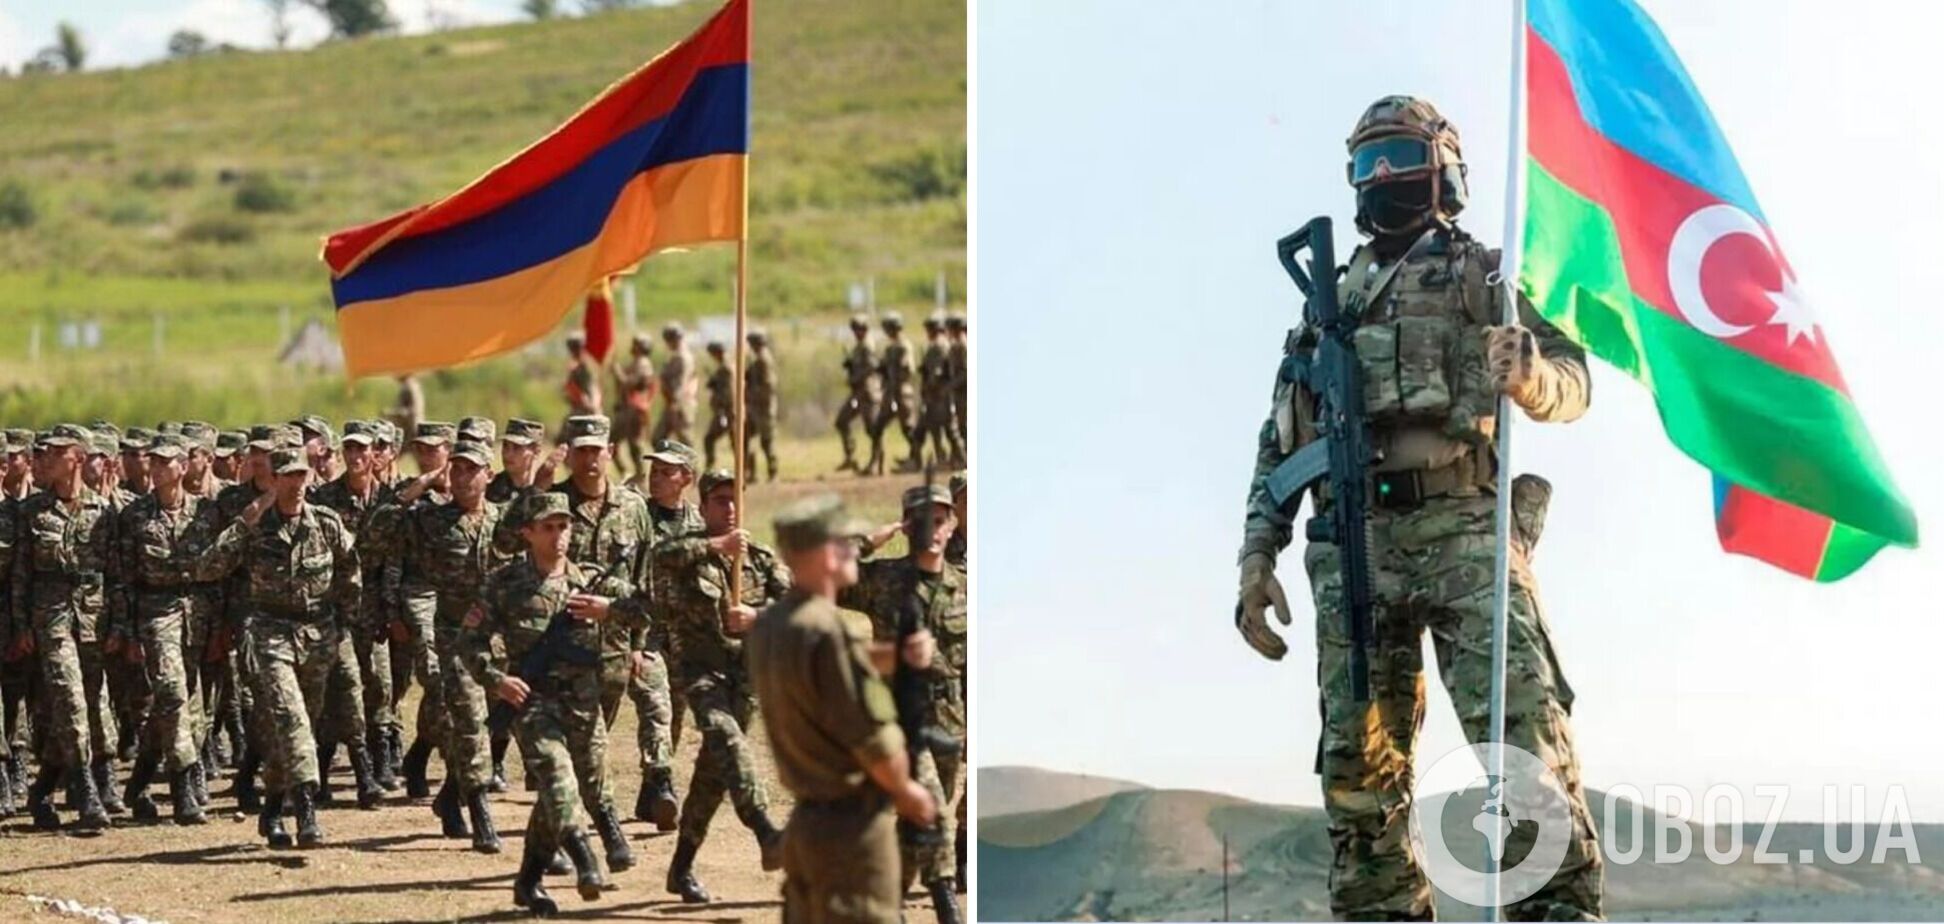 Азербайджан може розпочати вторгнення до Вірменії протягом кількох тижнів – Politico